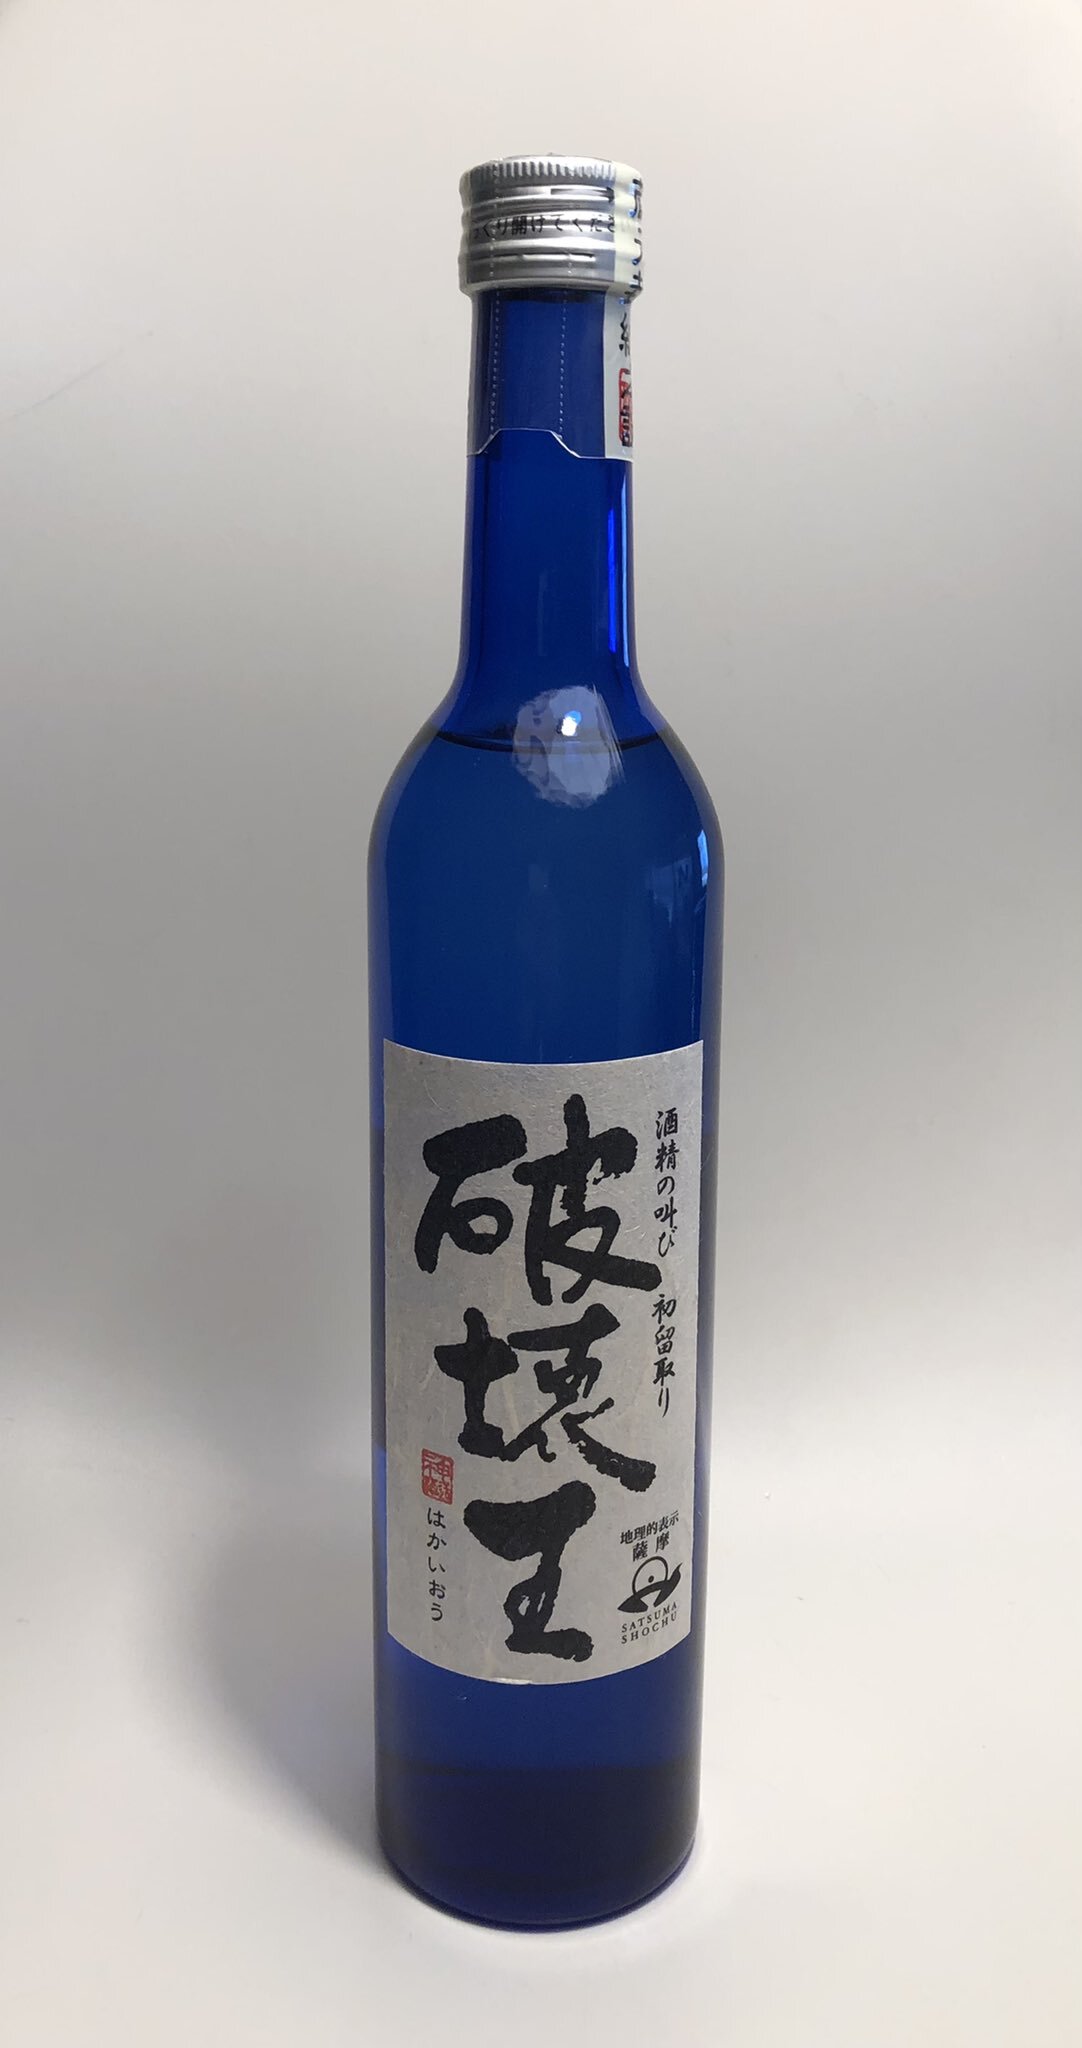 Le saké de Kumamoto a changé le monde